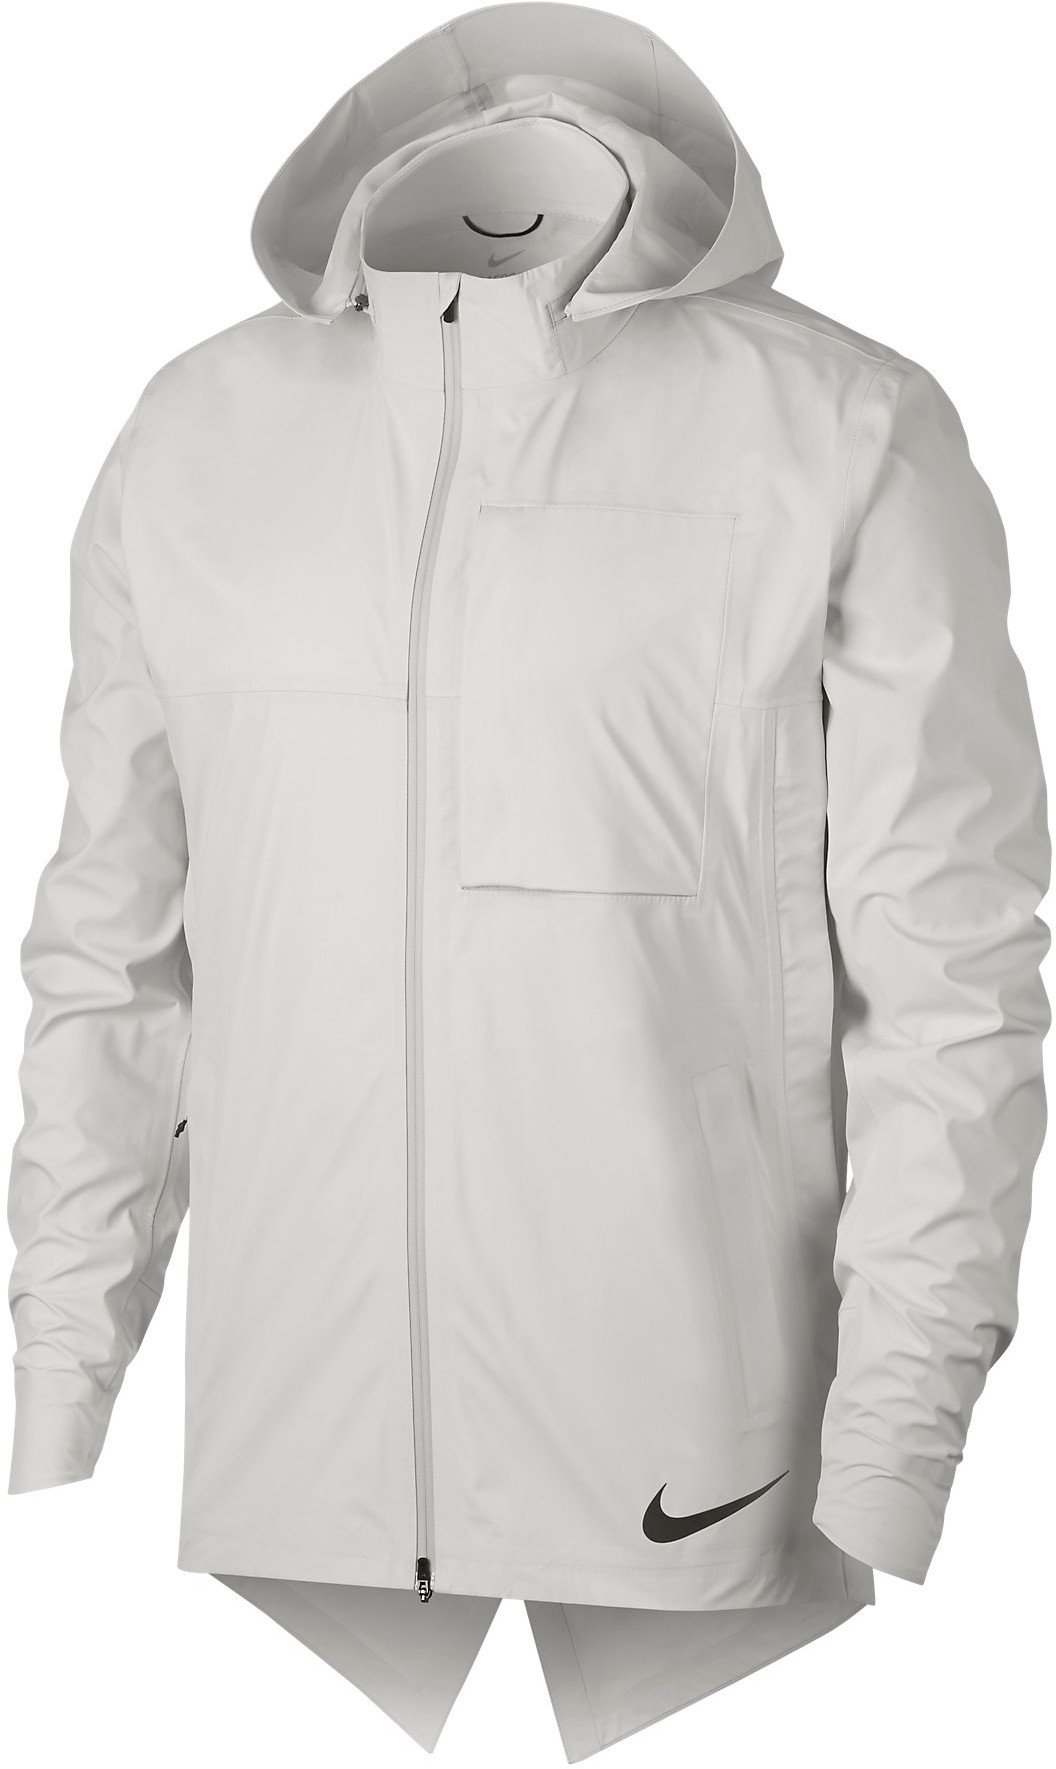 Pánská běžecká bunda s kapucí Nike AeroShield